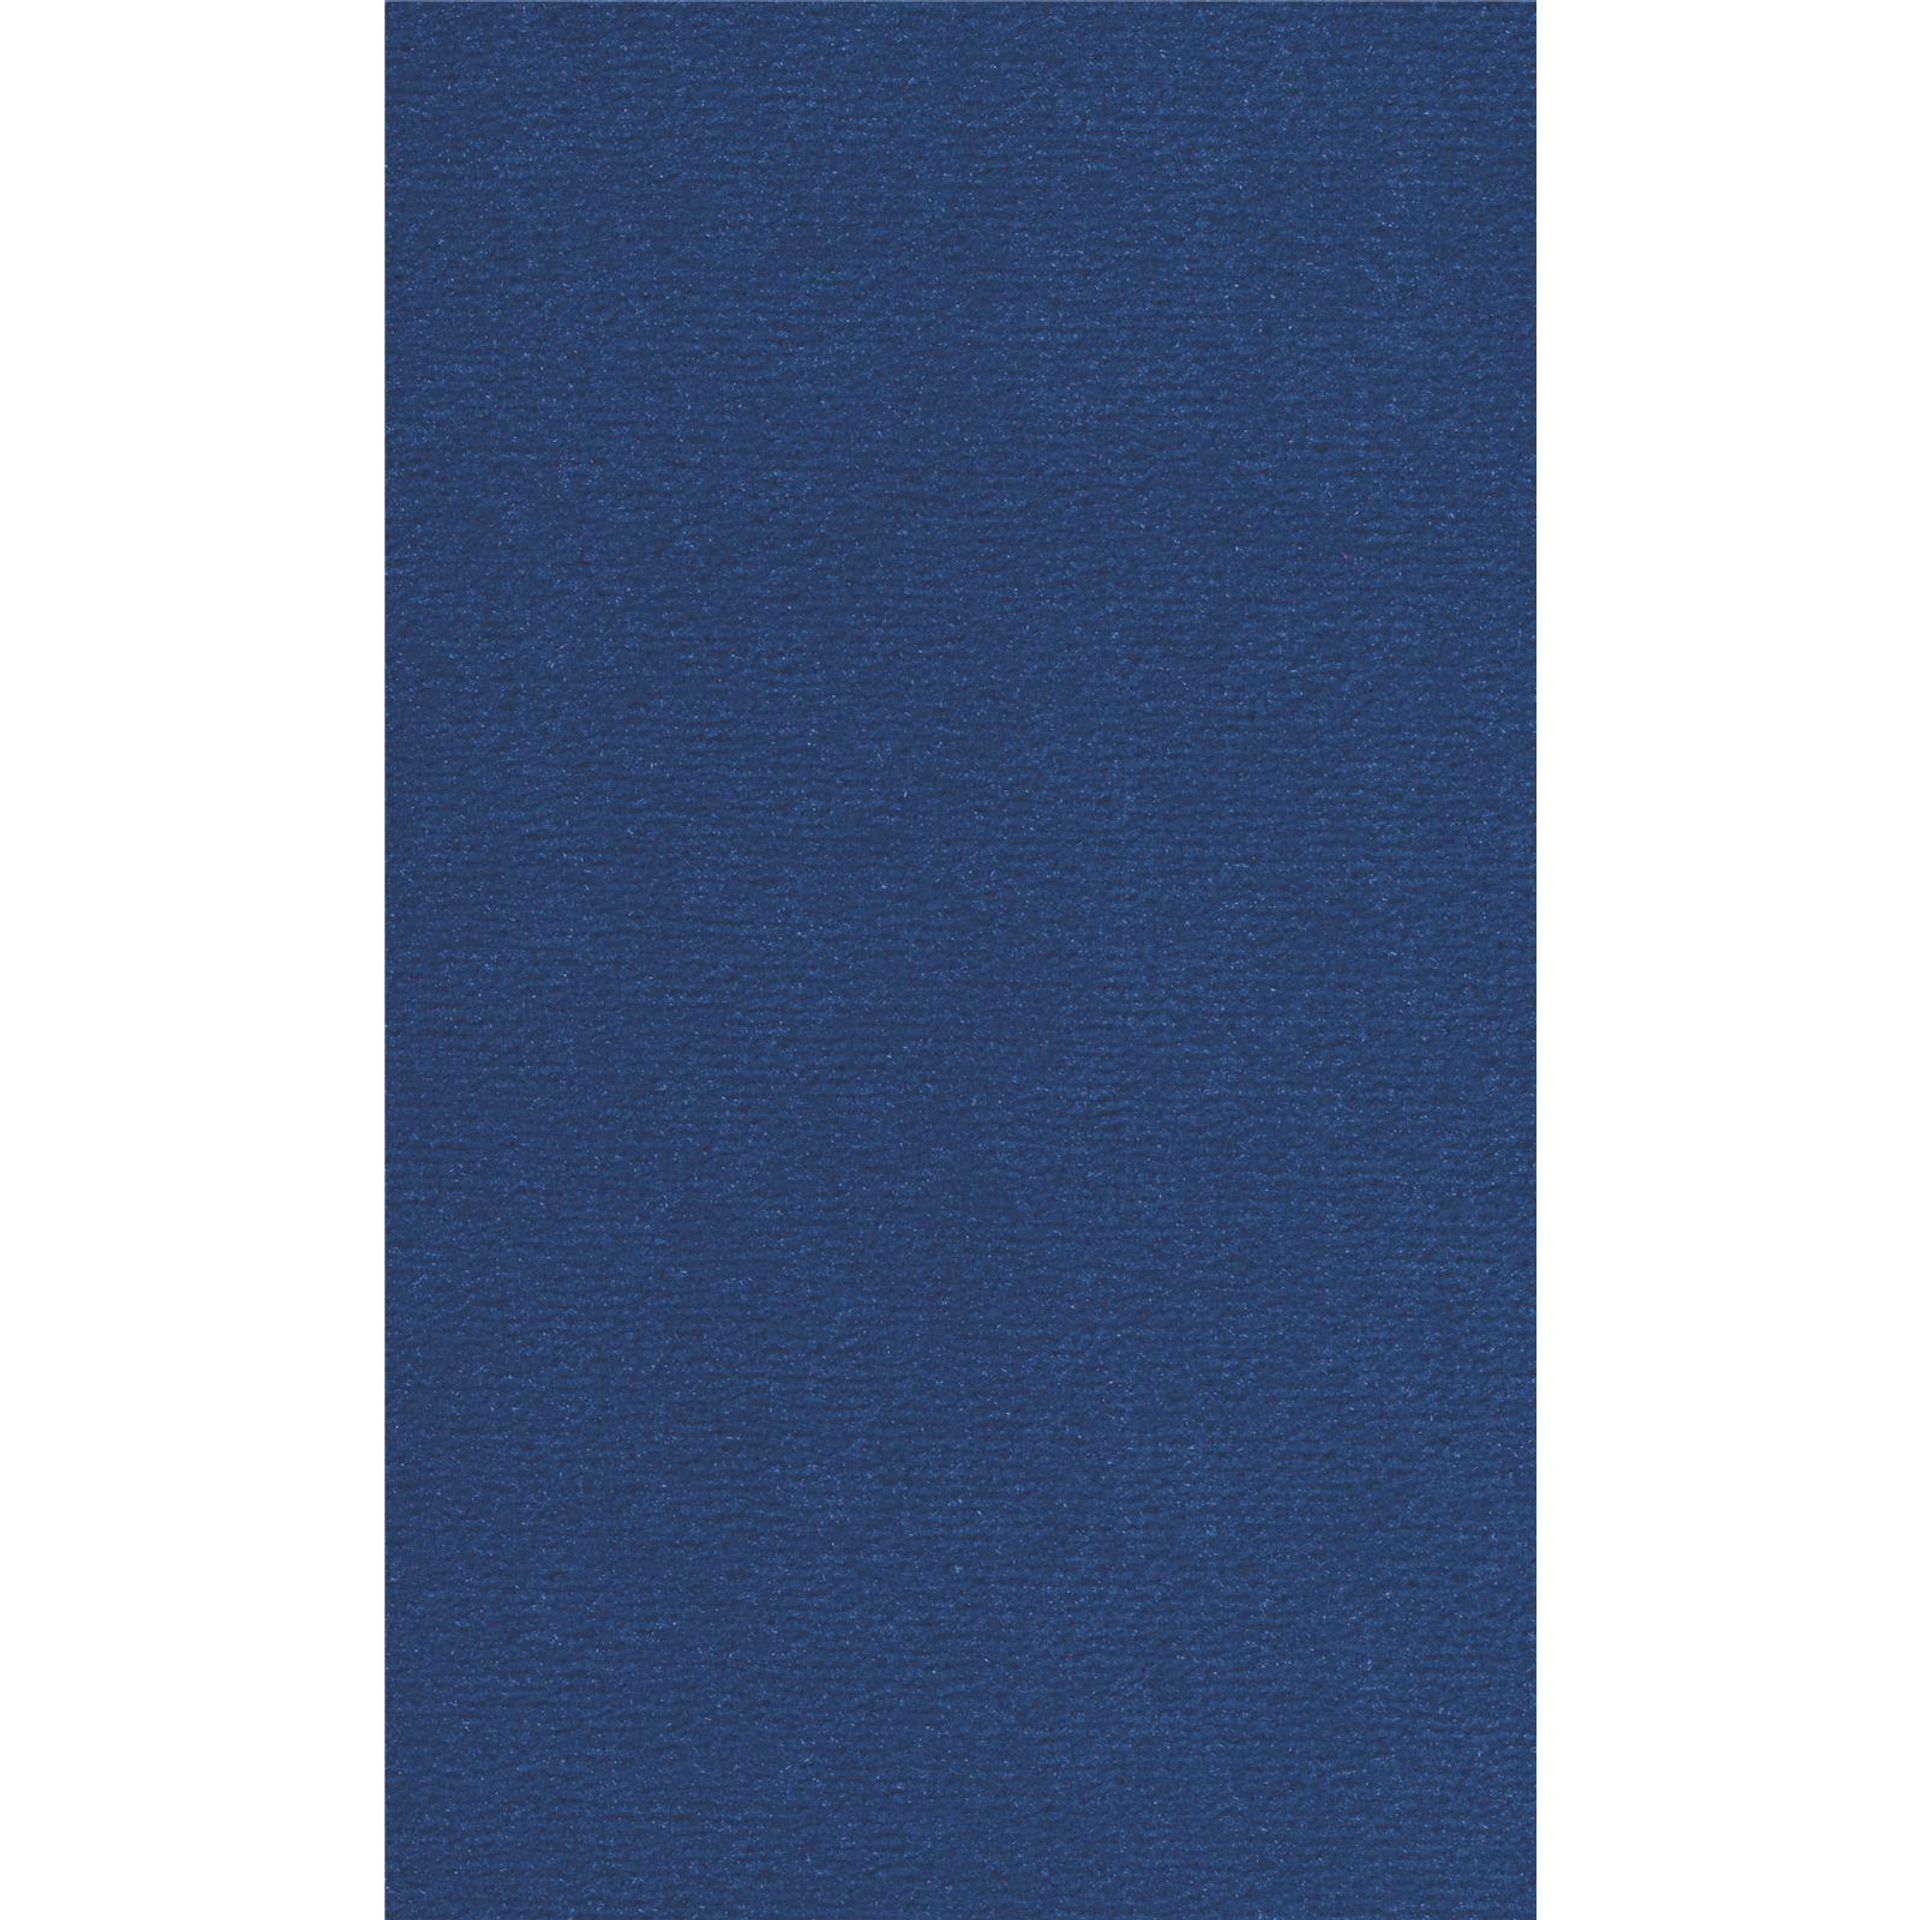 Teppichboden Vorwerk Passion 1021 BINGO Velours Blau 3R32 - Rollenbreite 400 cm